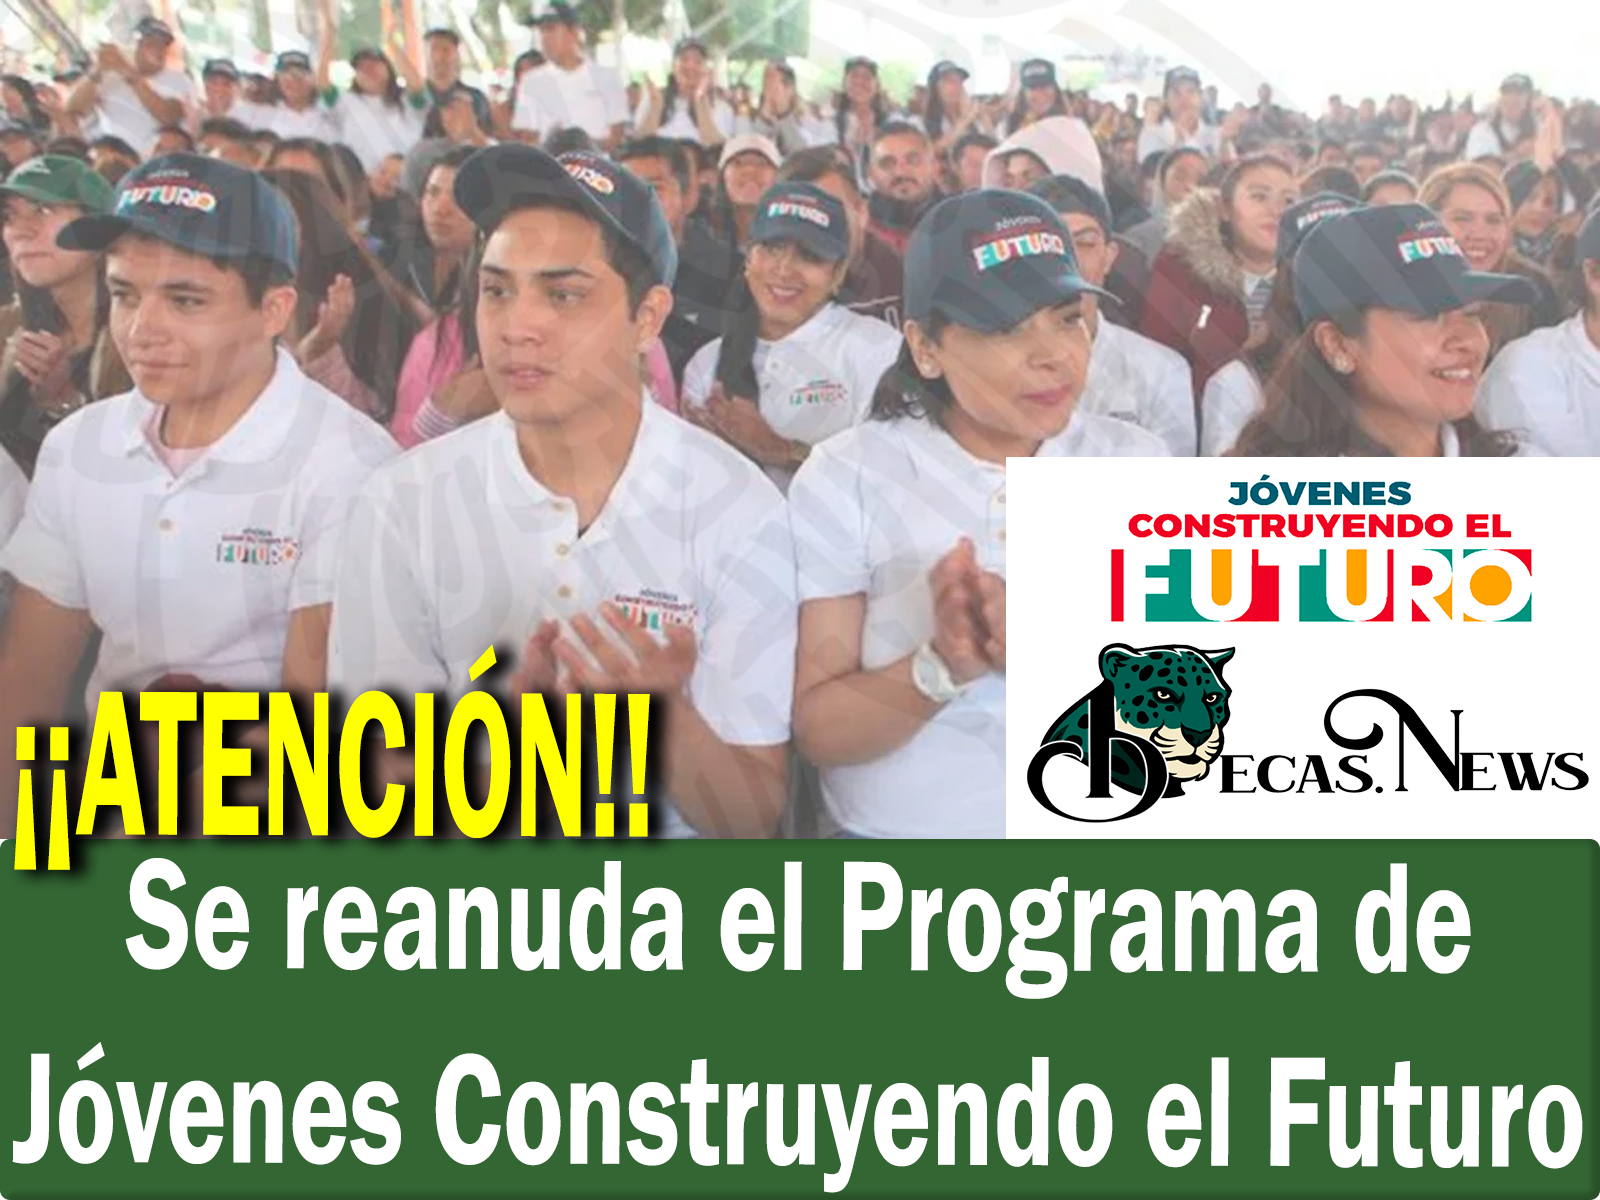 ¡¡ATENCIÓN!! Se reanuda el Programa de Jóvenes Construyendo el Futuro